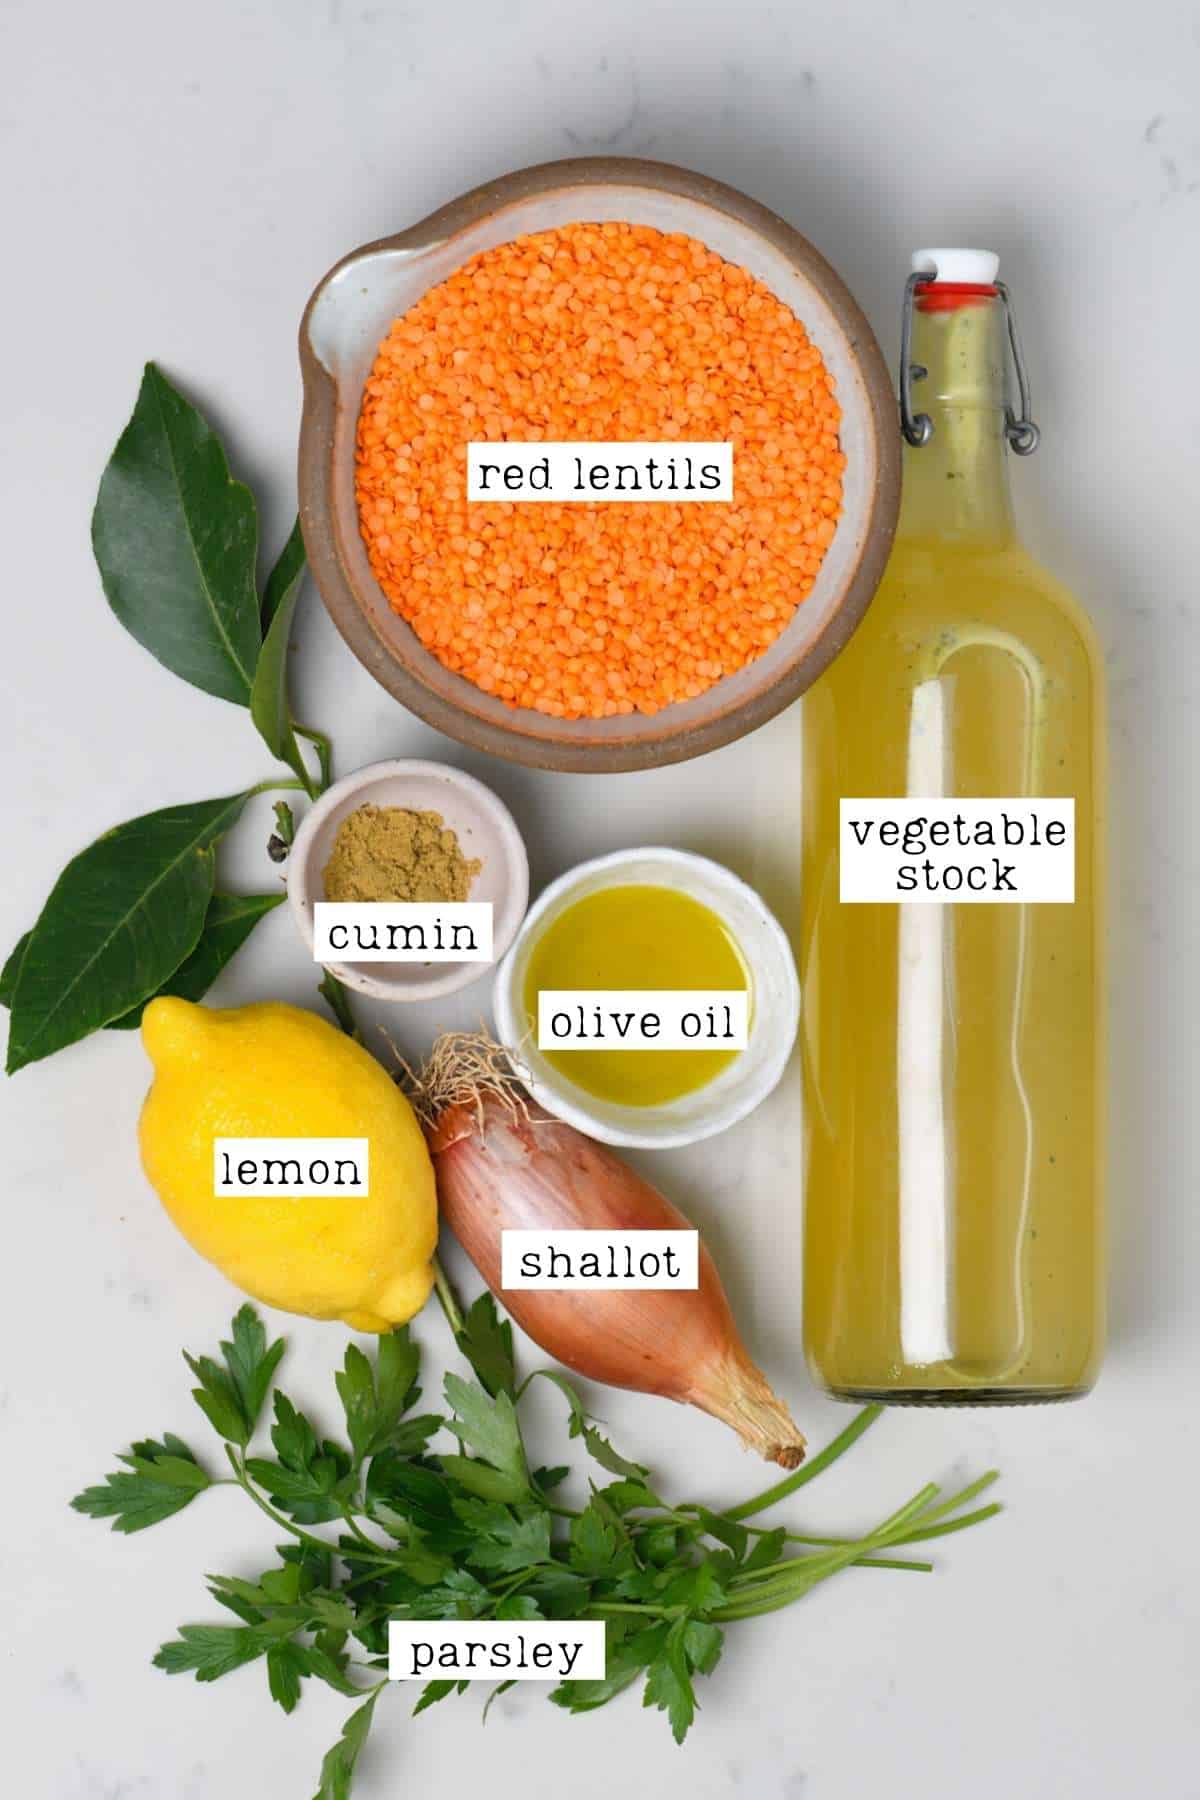 Ingredients for red lentil soup